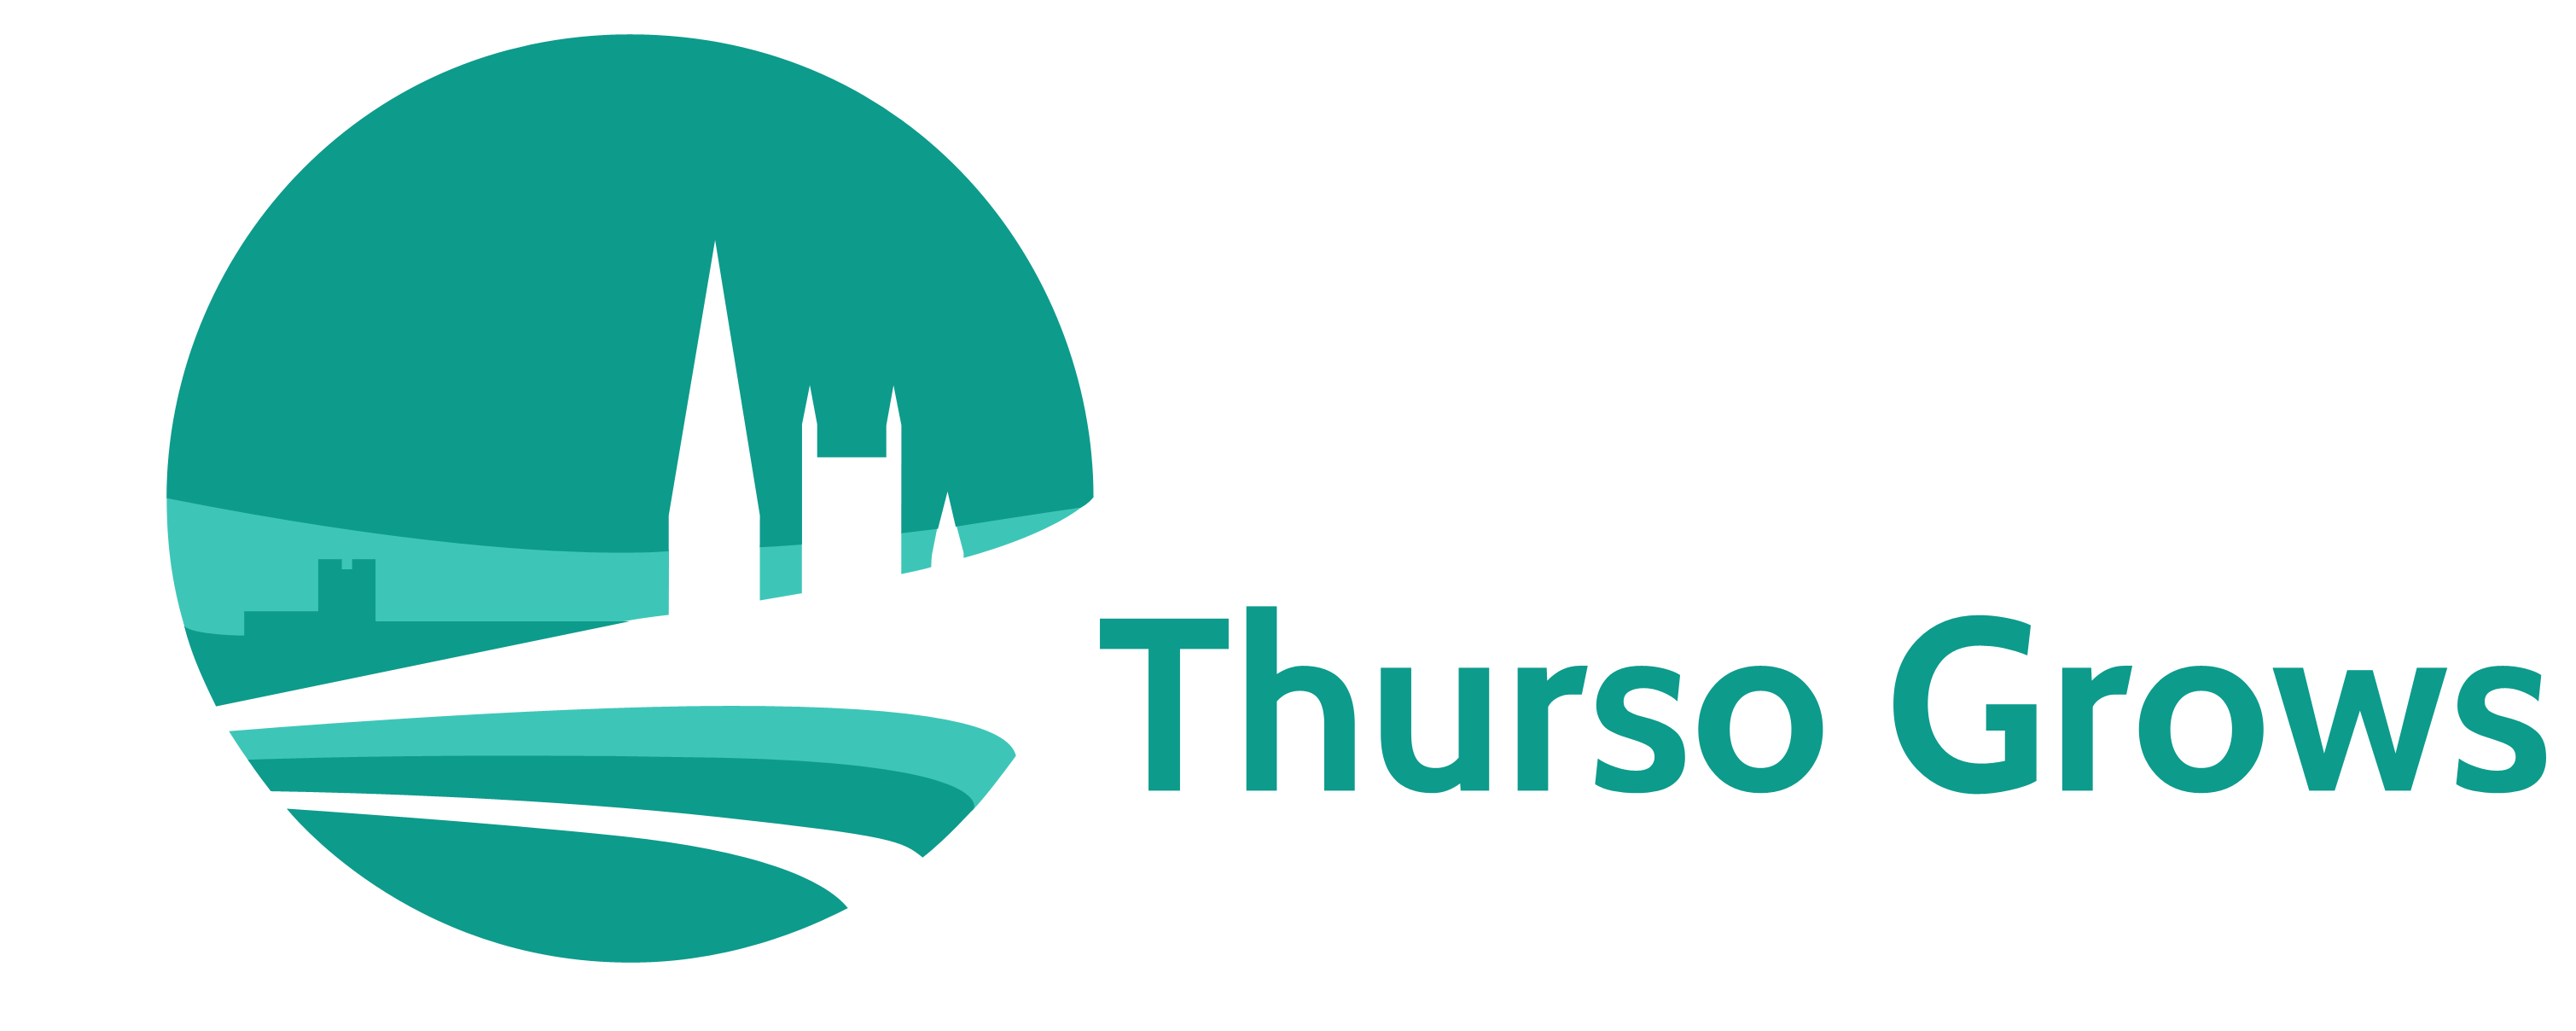 Thurso Grows - Logo